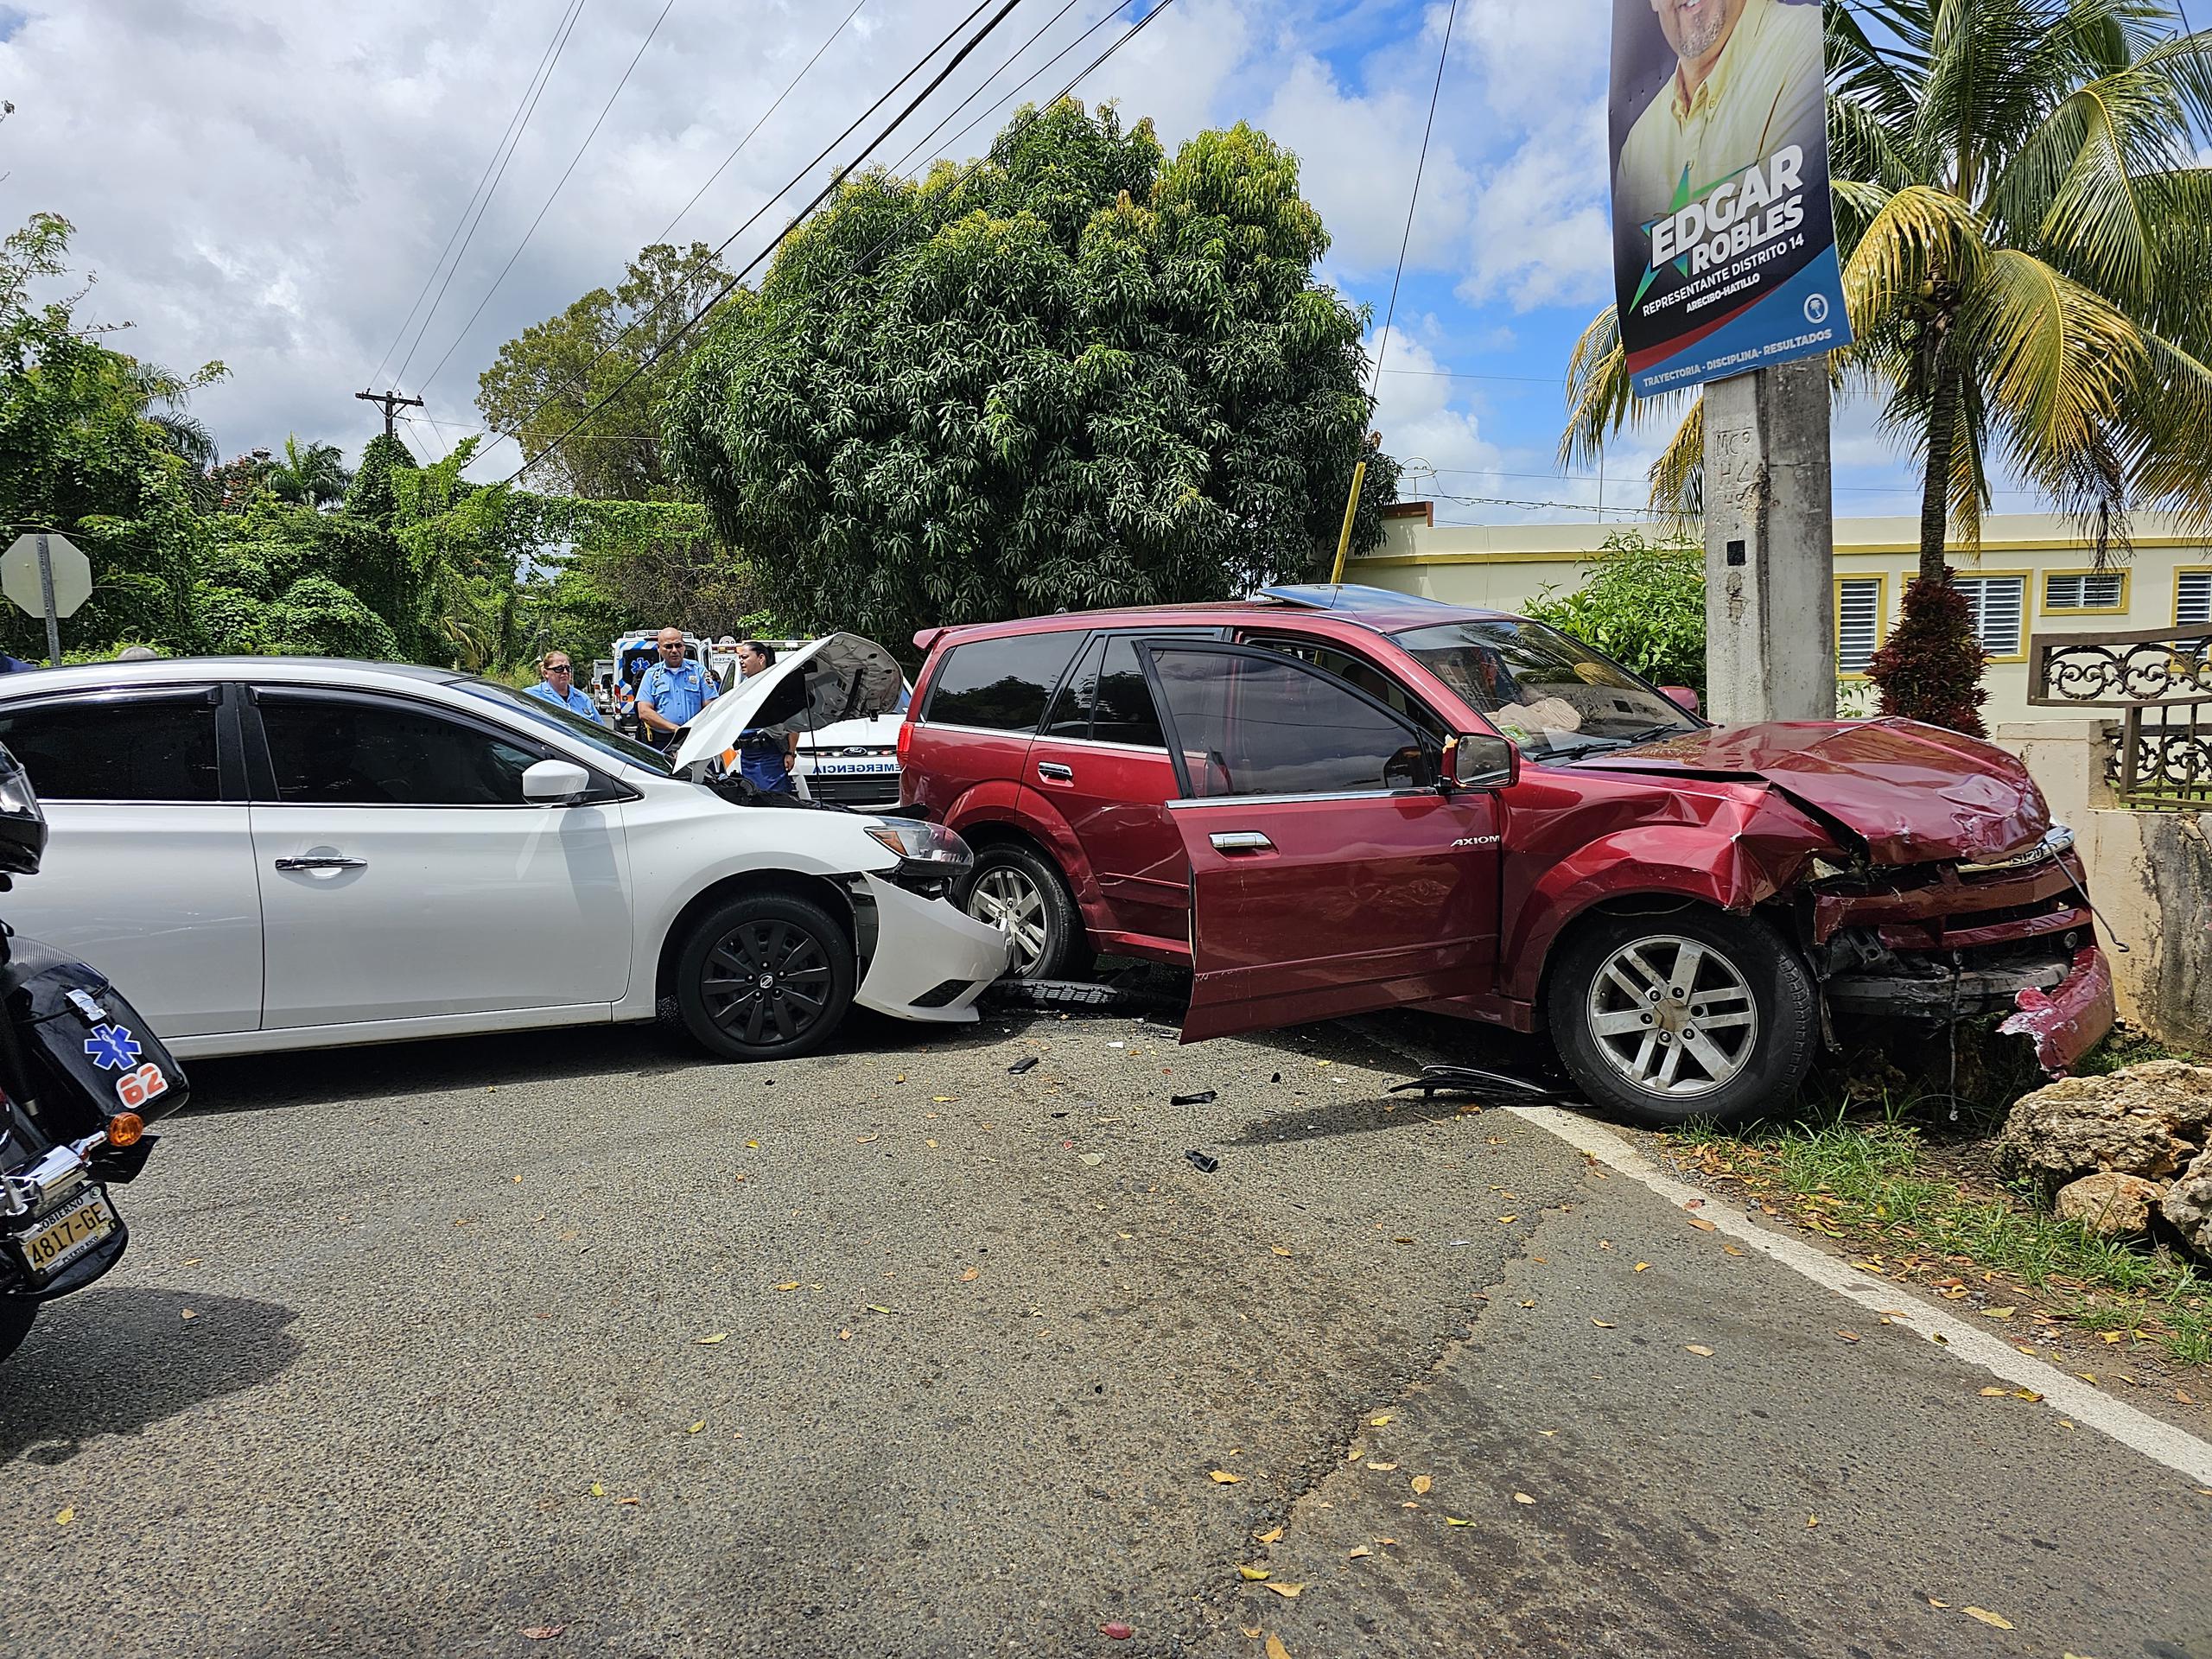 De la investigación inicial se desprende que el conductor de una guagua Isuzu color vino no se detuvo ante la señal de PARE, lo que provocó que fuera impactada por un auto Nissan Sentra color blanco.